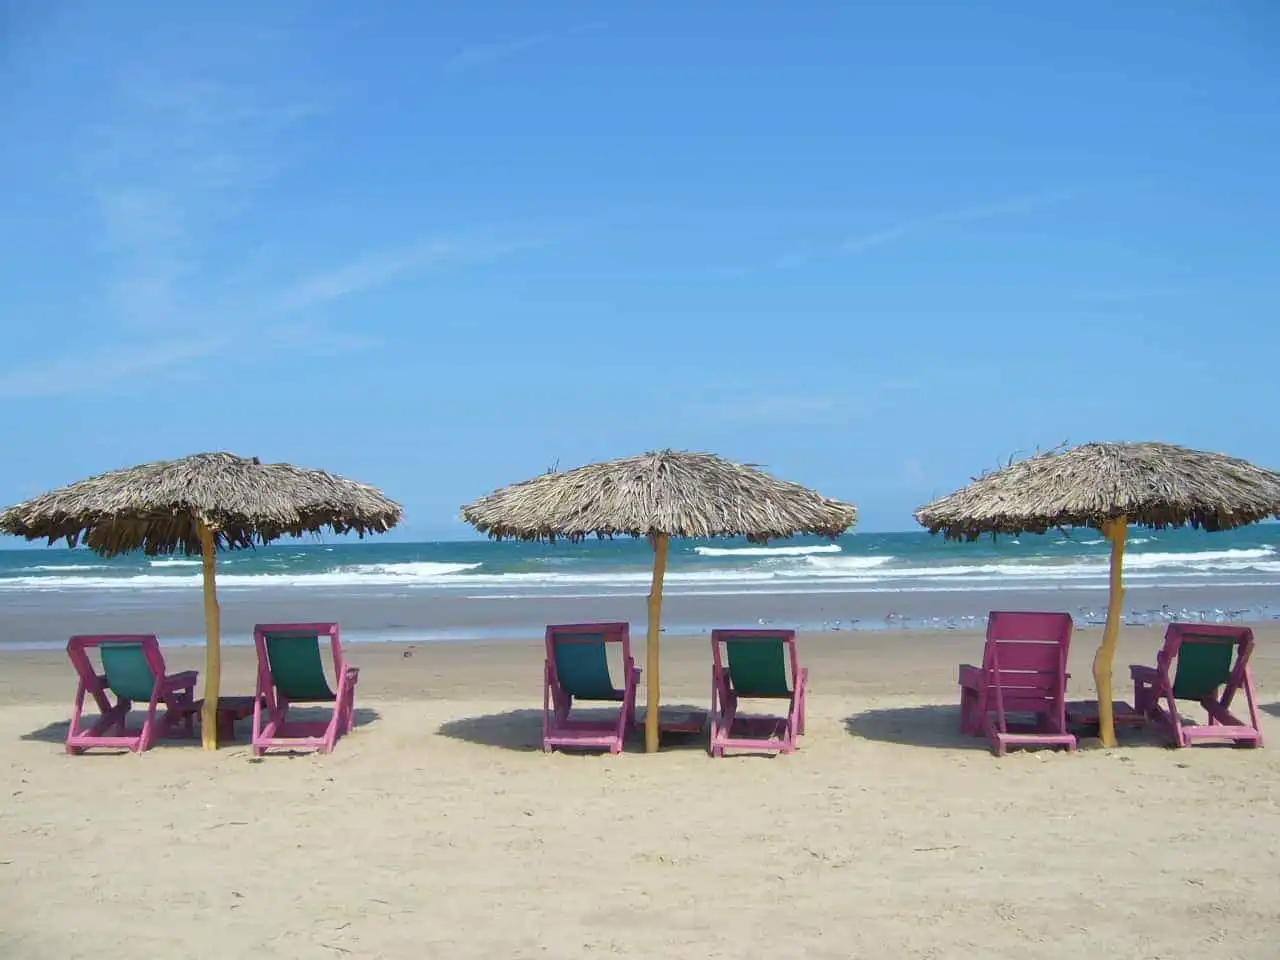 Compra tus Boletos de autobús en ETN Turistar Lujo y visita La Playa Miramar Ciudad Madero, ubicado a 15 minutos de Tampico, Tampico